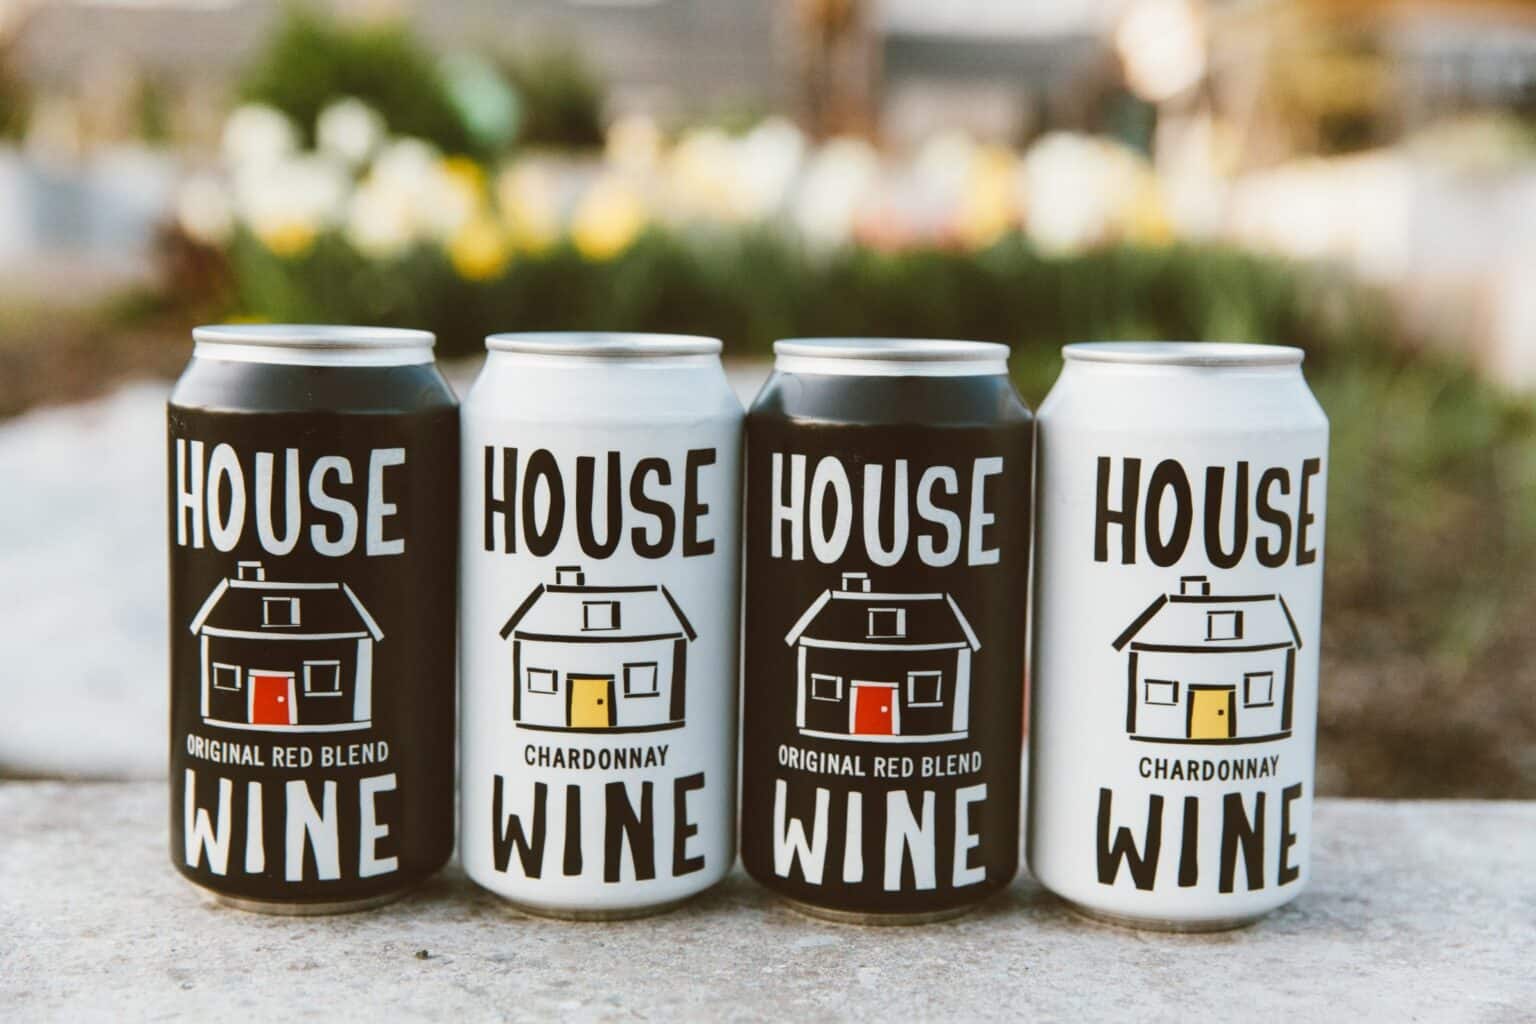 House Wine, wine packaging debate